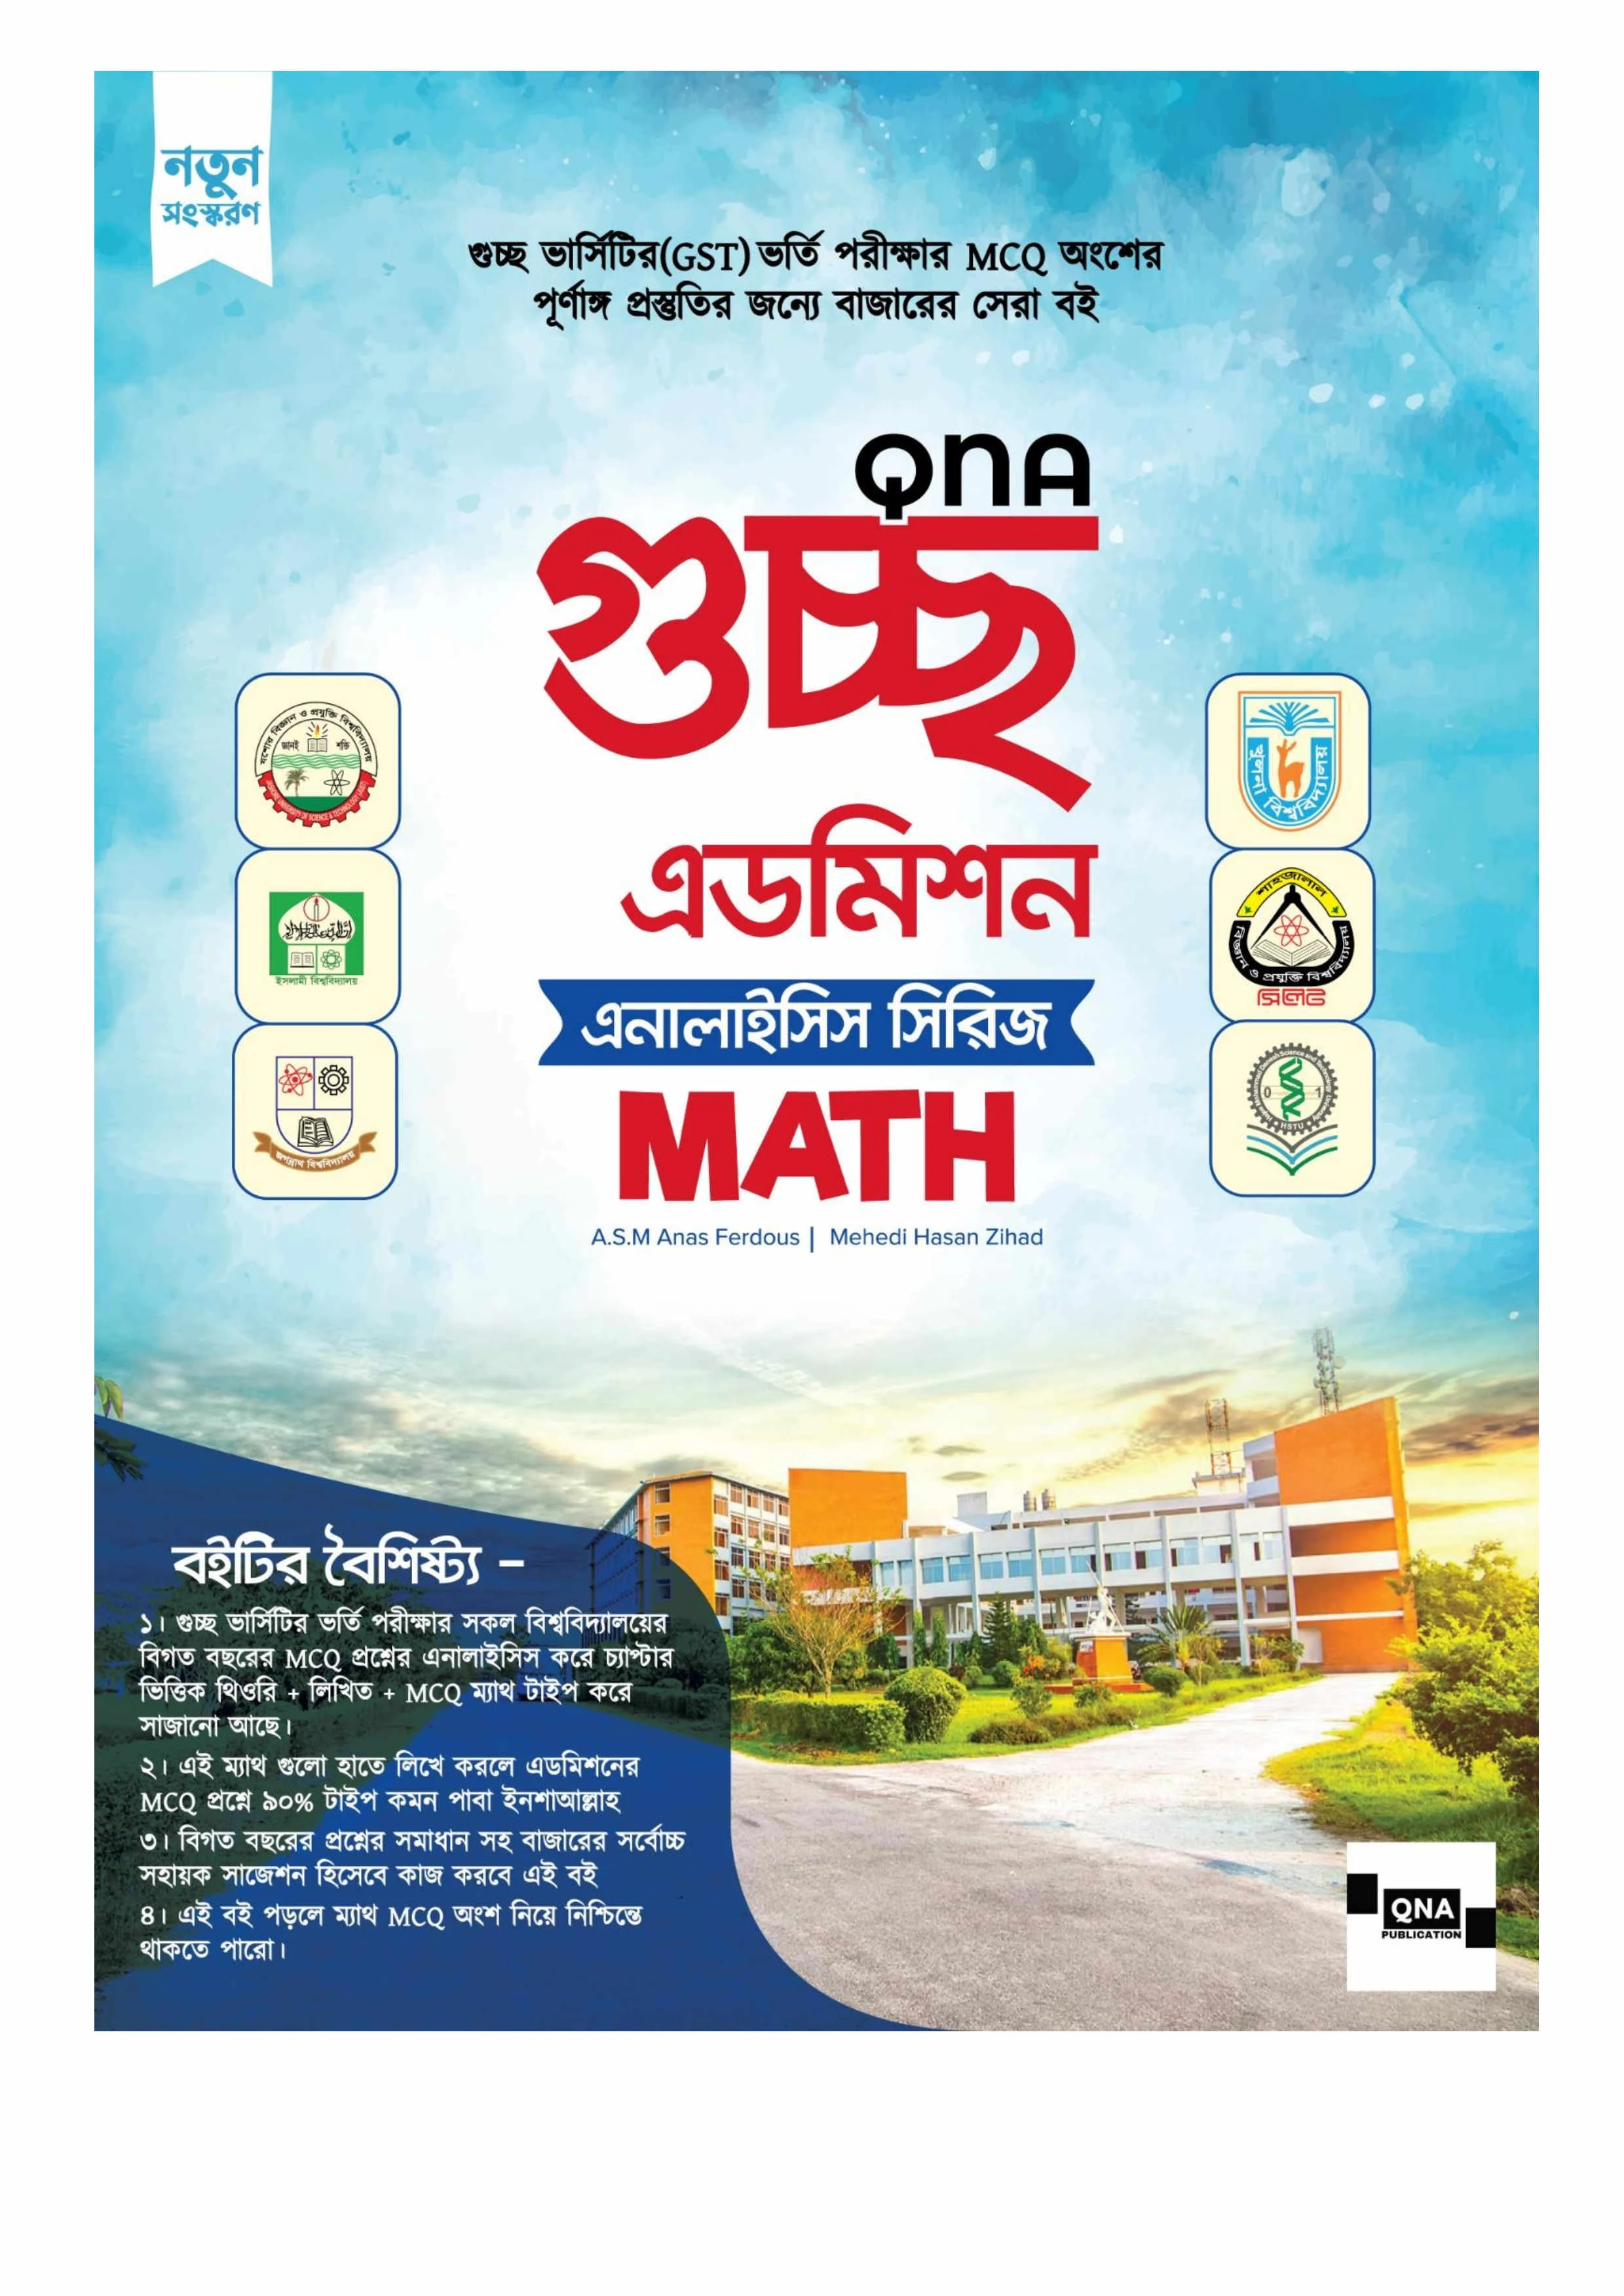 Qna gst admission analysis series Math pdf download,QNA গুচ্ছ এডমিশন অ্যানালাইসিস সিরিজ Math PDF